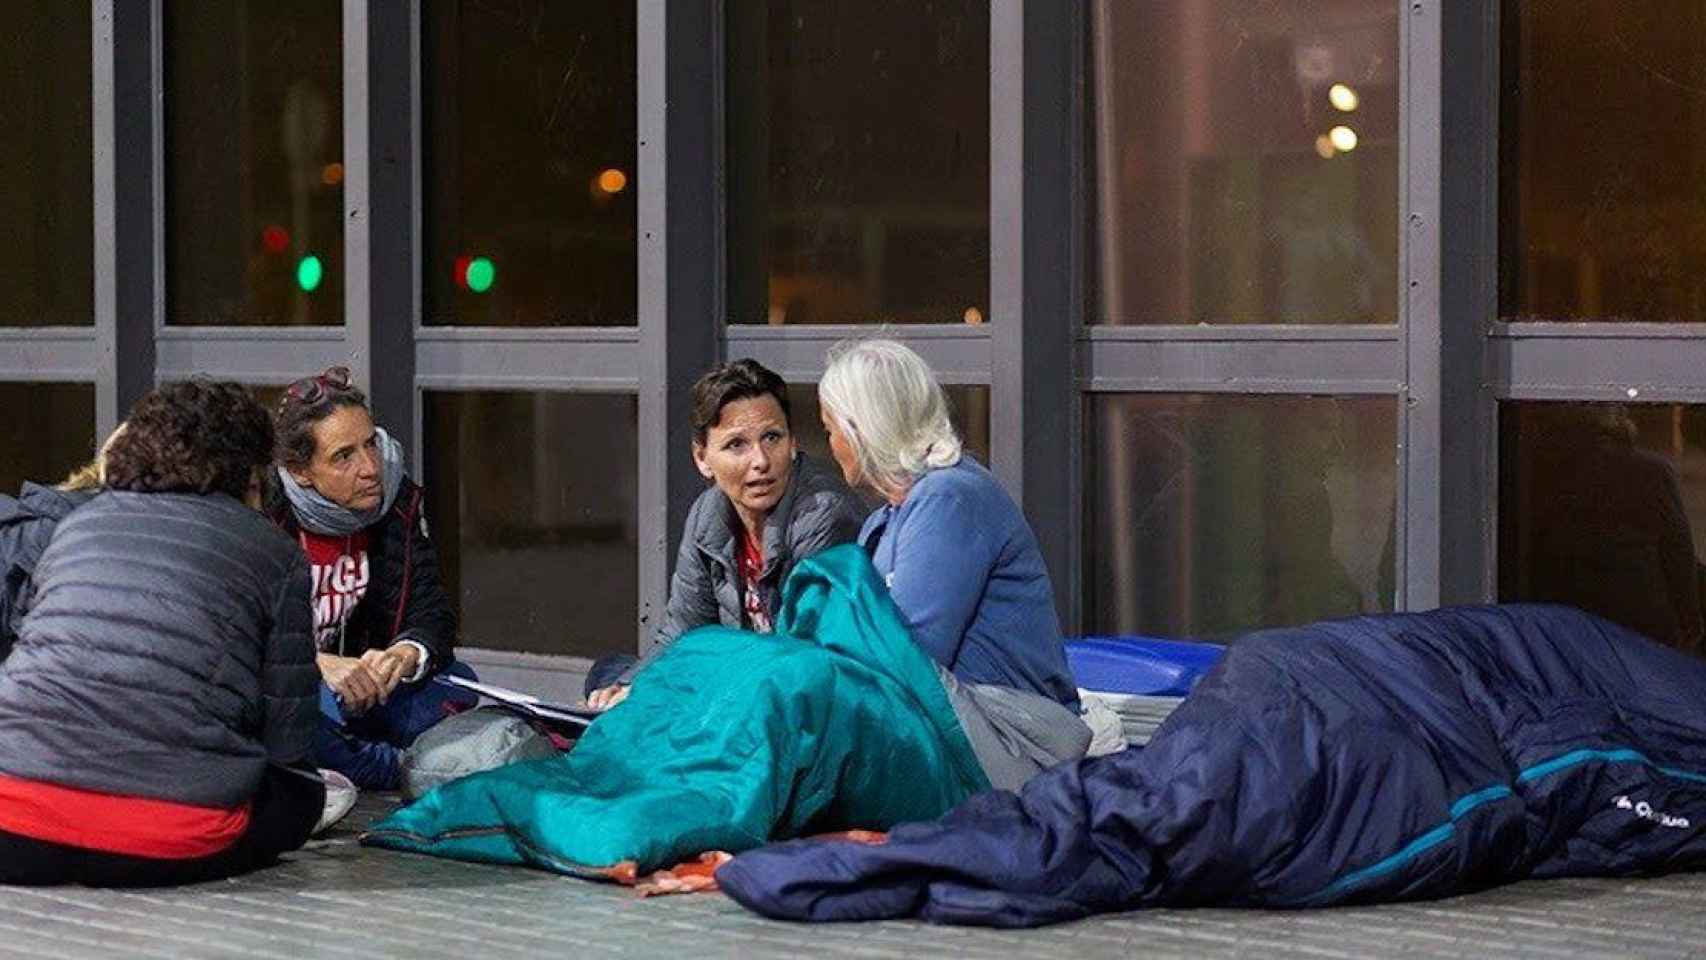 Voluntarios hablan con una persona sin hogar en Barcelona en una imagen de archivo / FUNDACIÓ ARRELS